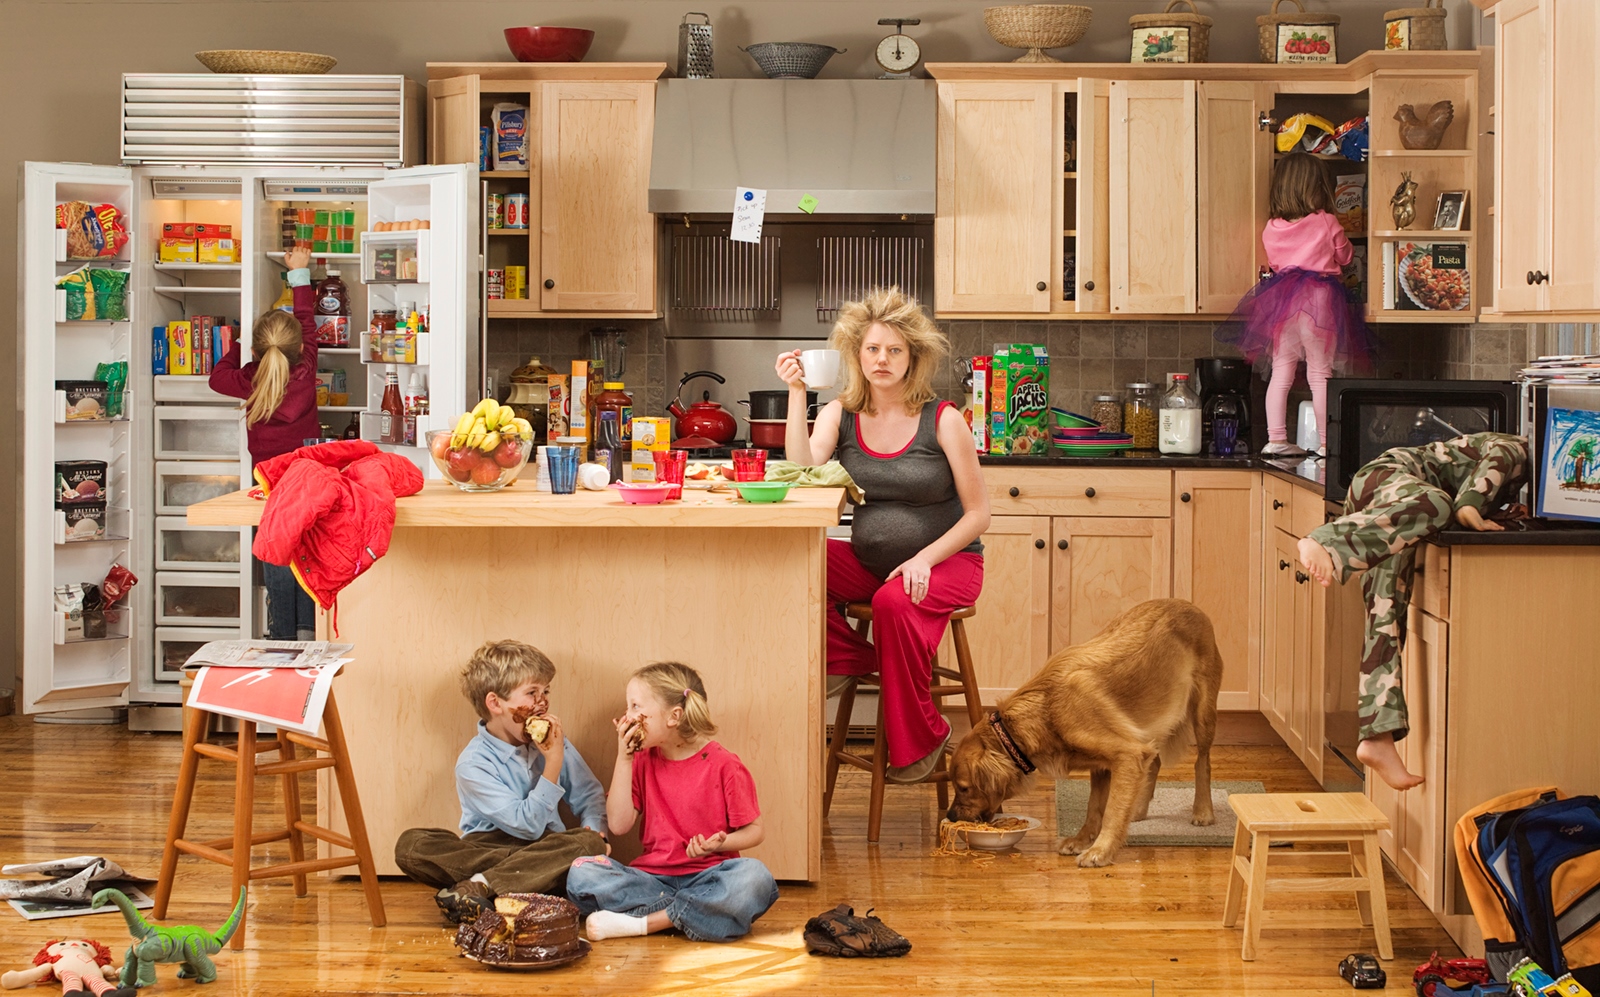 10 моментов, которые должны учитывать мамы, работающие дома